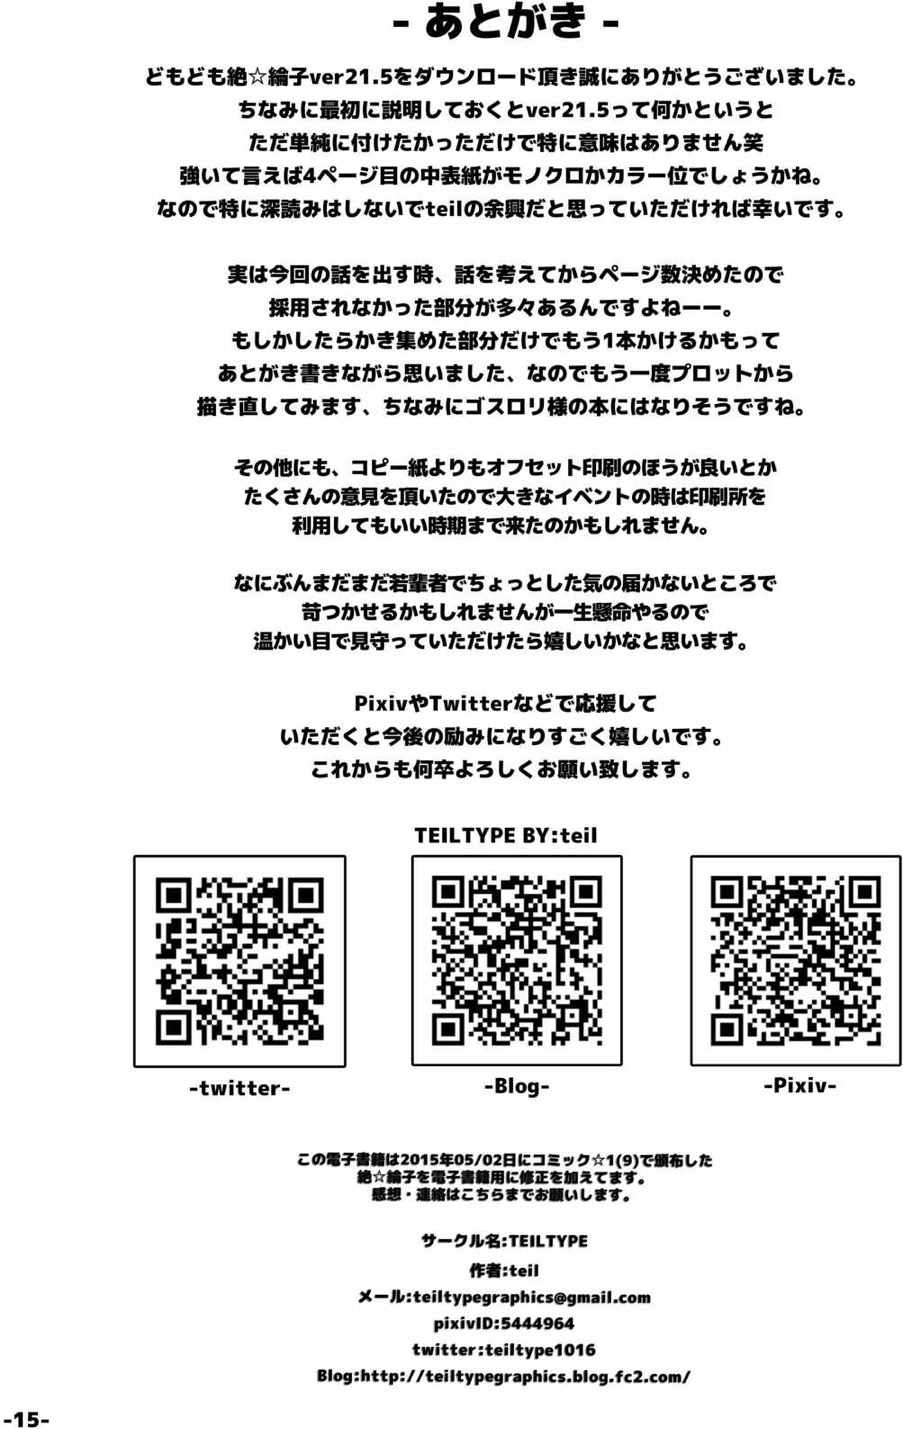 [TEILTYPE (teil)] Zetsu E Rinco  ver 21.5 (SHIROBAKO) [Digital] [TEILTYPE (teil)] 絶☆綸子ver21.5 (SHIROBAKO) [DL版]